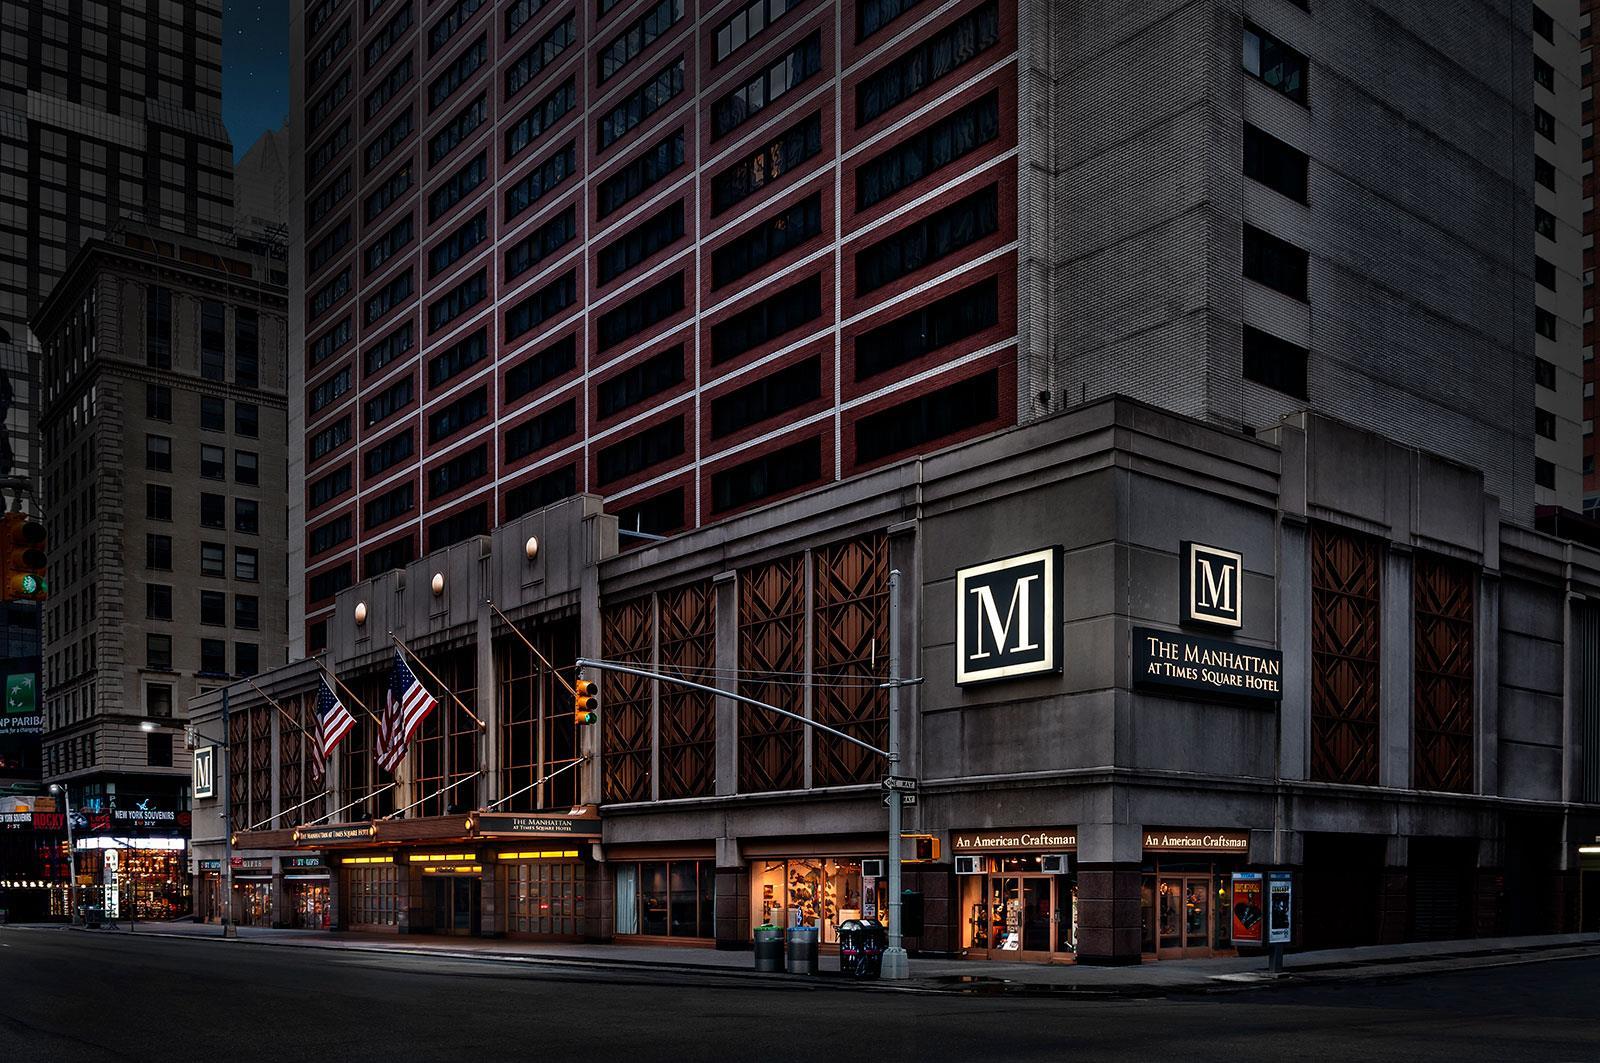 Manhattan Hotels 2 491 Cheap Manhattan Hotel Deals New York